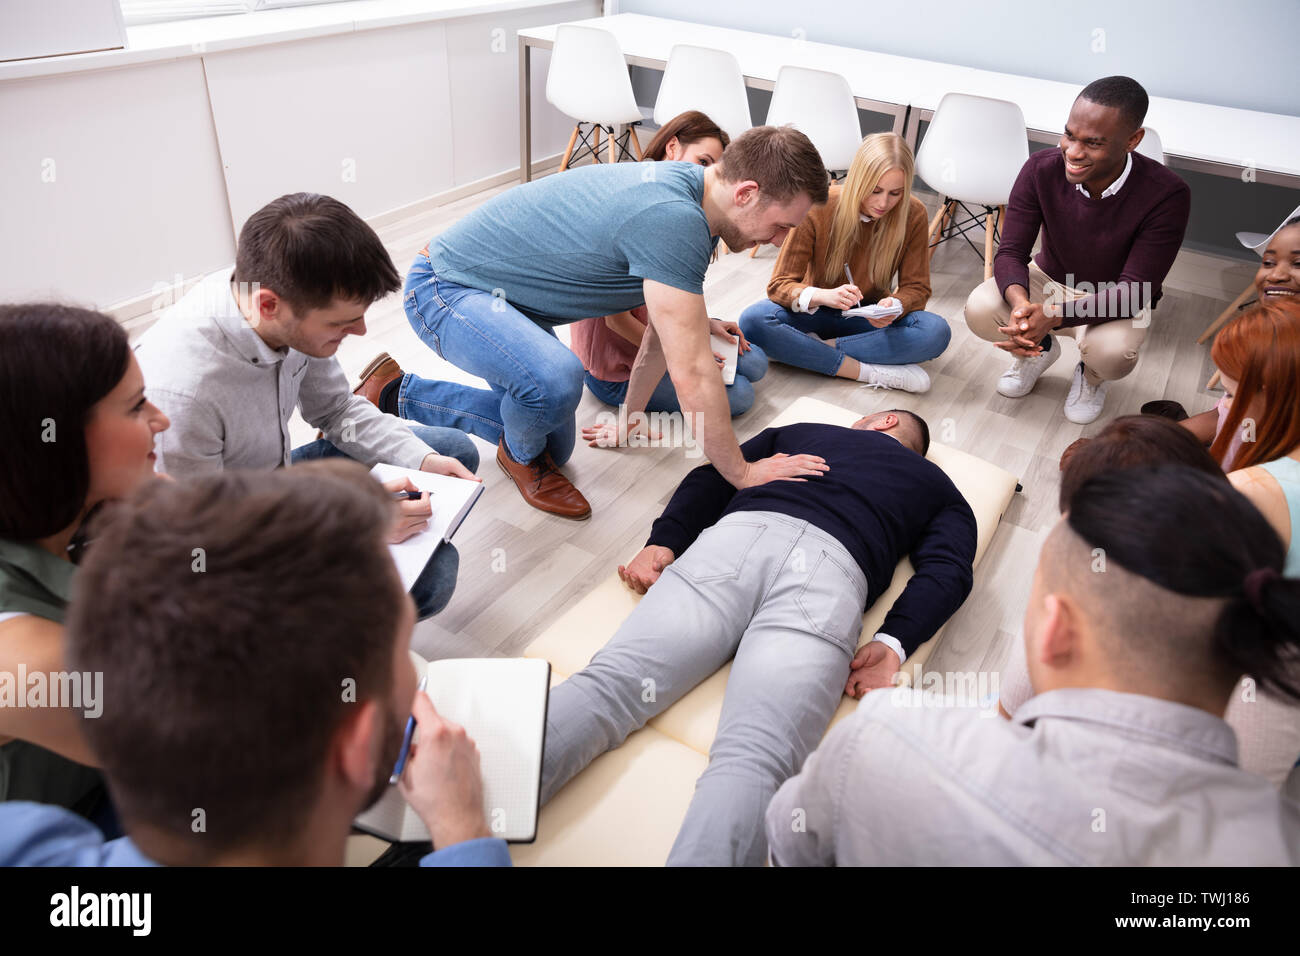 Männliche Spezialist Durchführung Massage auf Mann während der Ausbildung Stockfoto